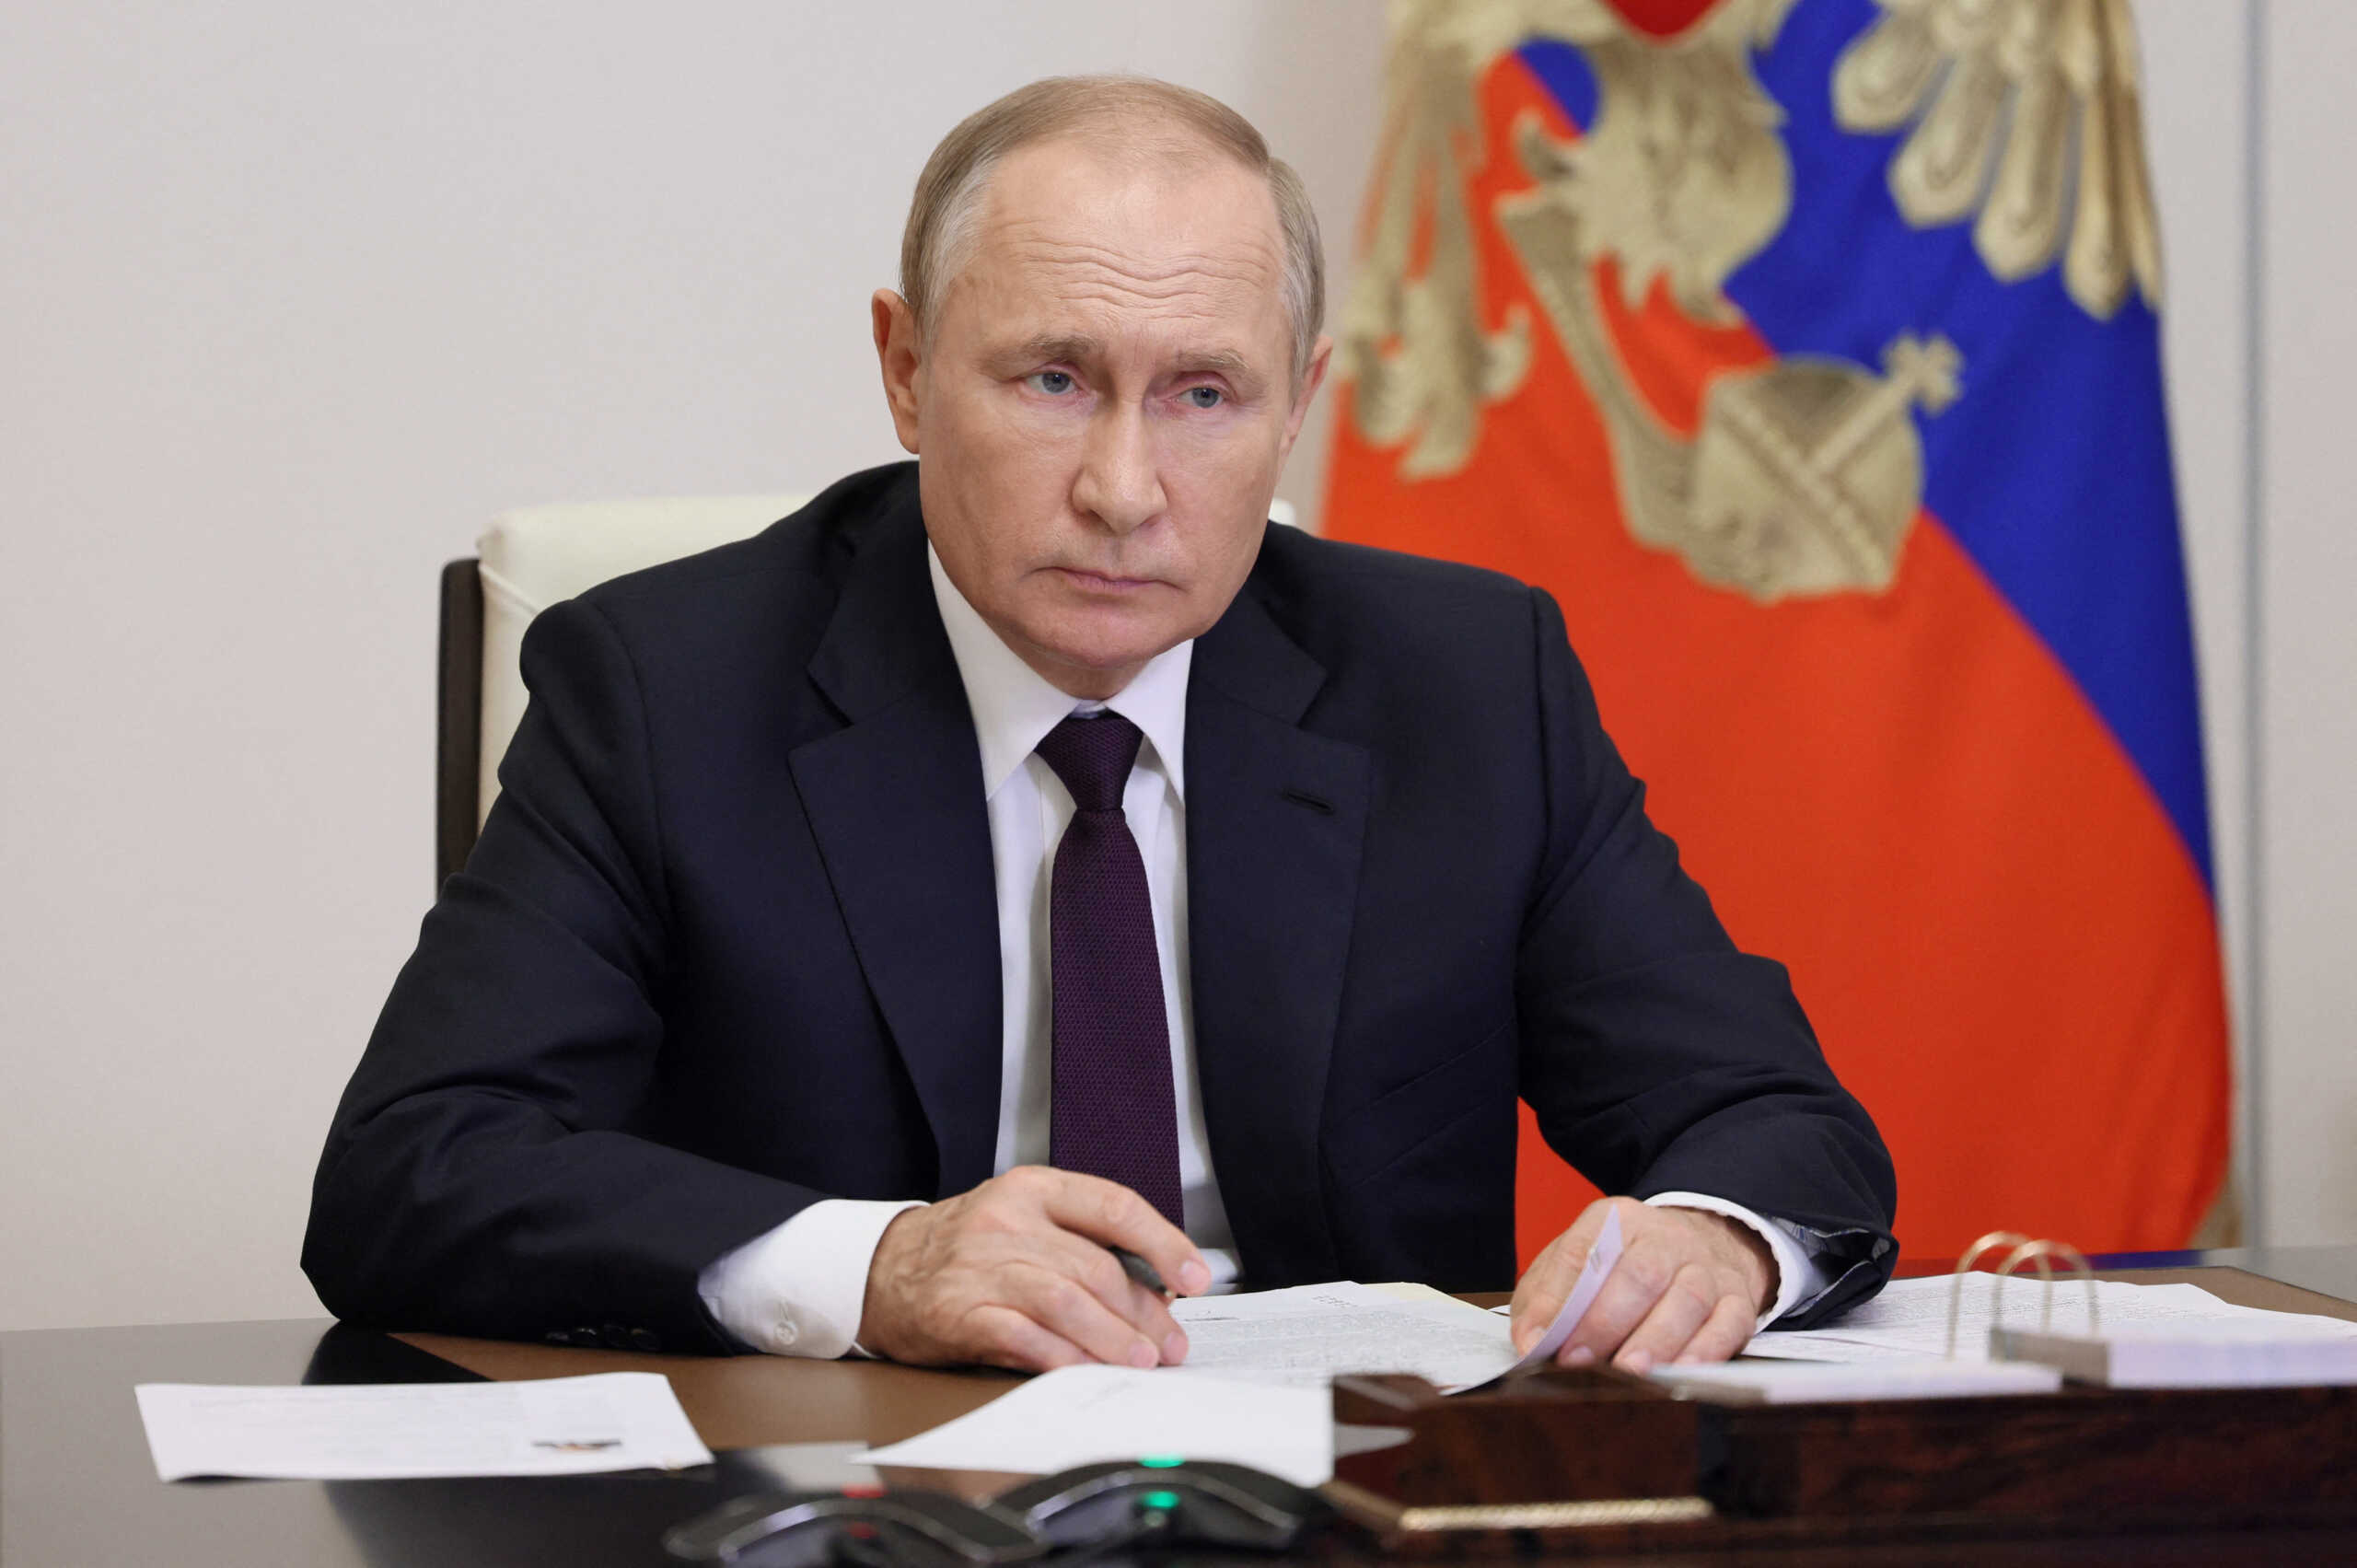 Πούτιν: Μια παγκόσμια σύγκρουση είναι όλο και πιο πιθανή